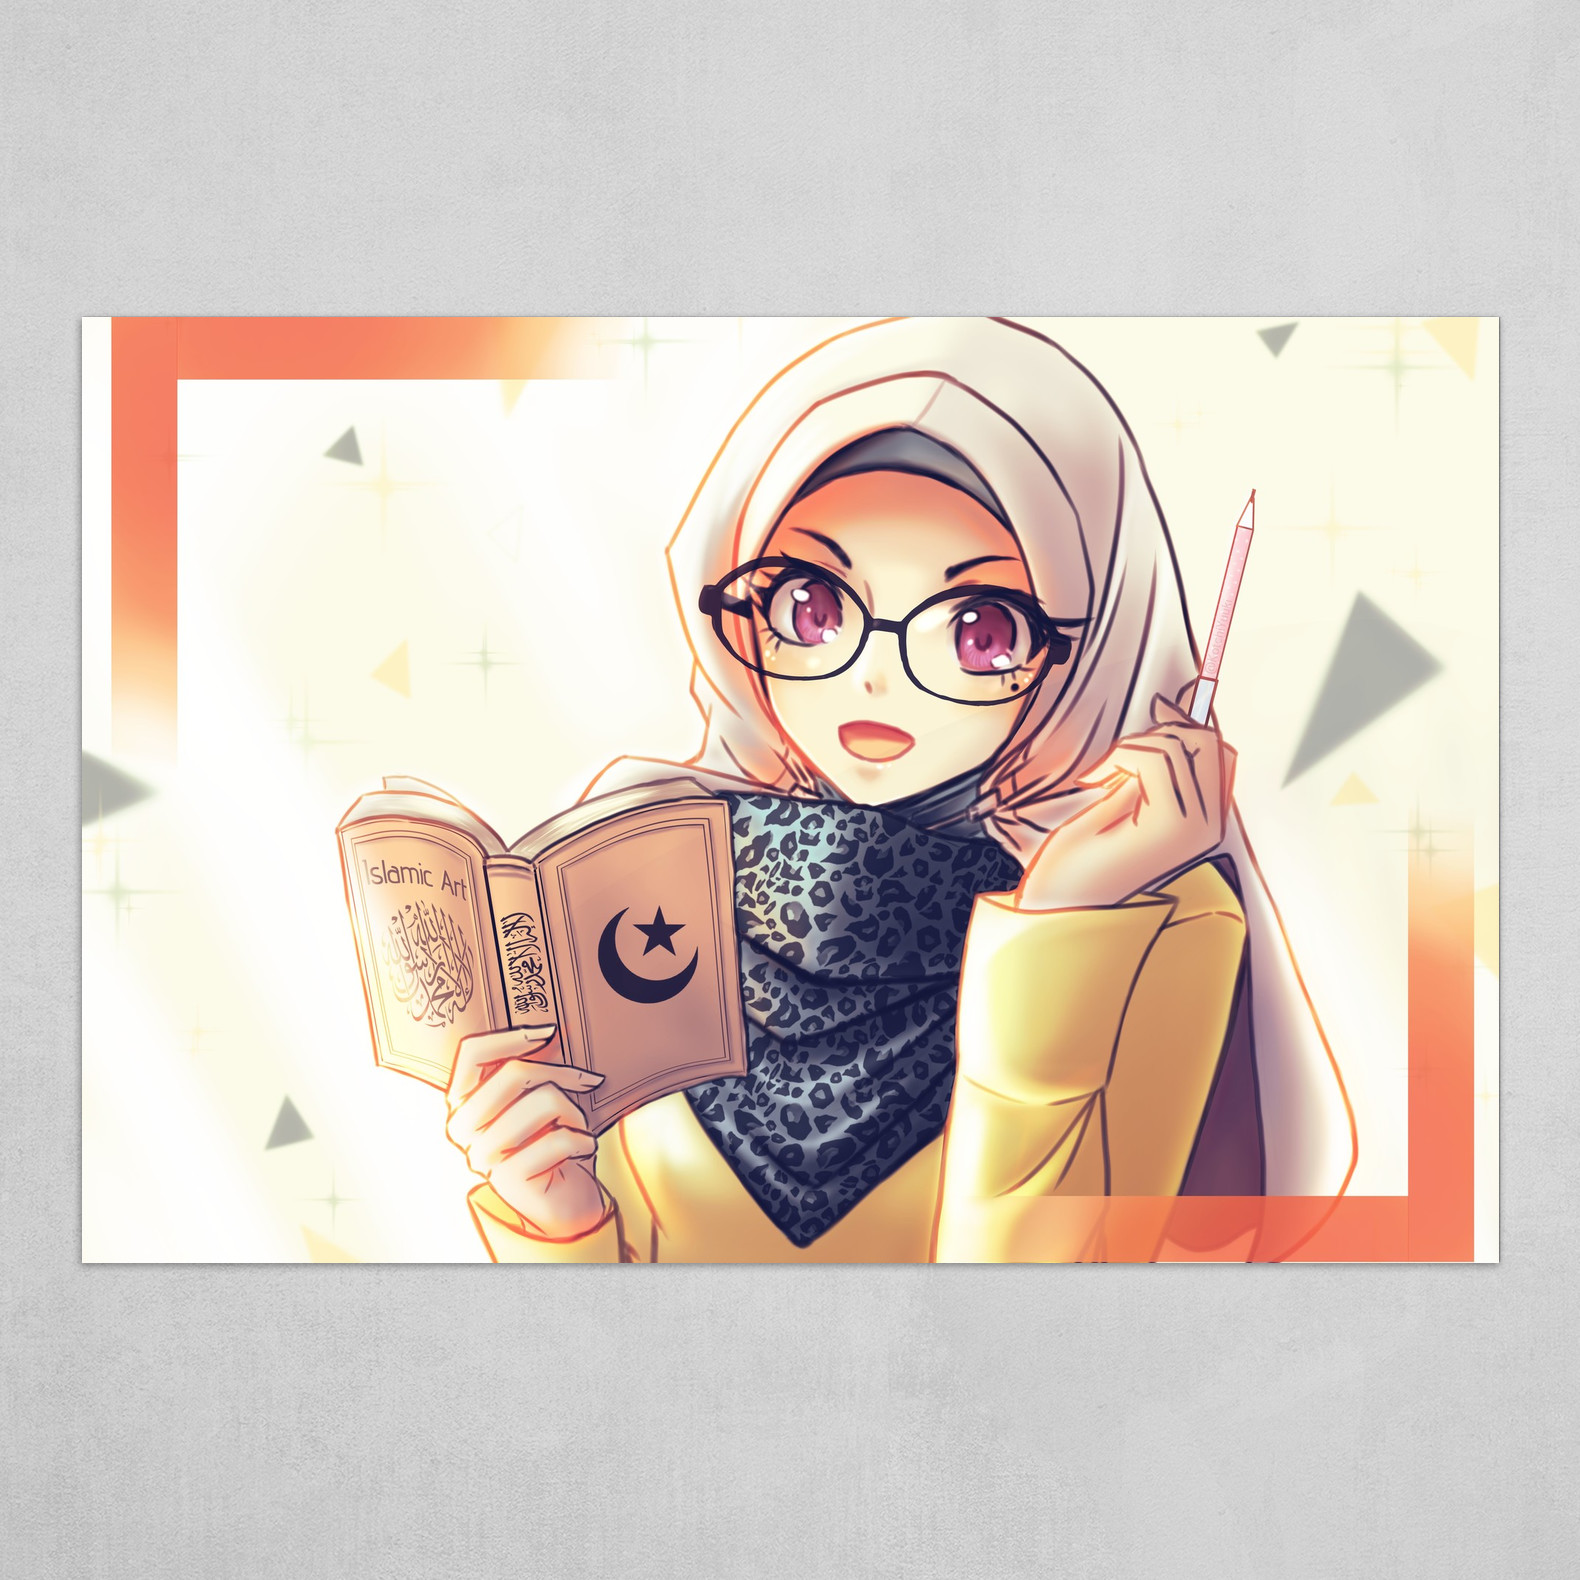 Muslim Girl - HD Wallpaper 